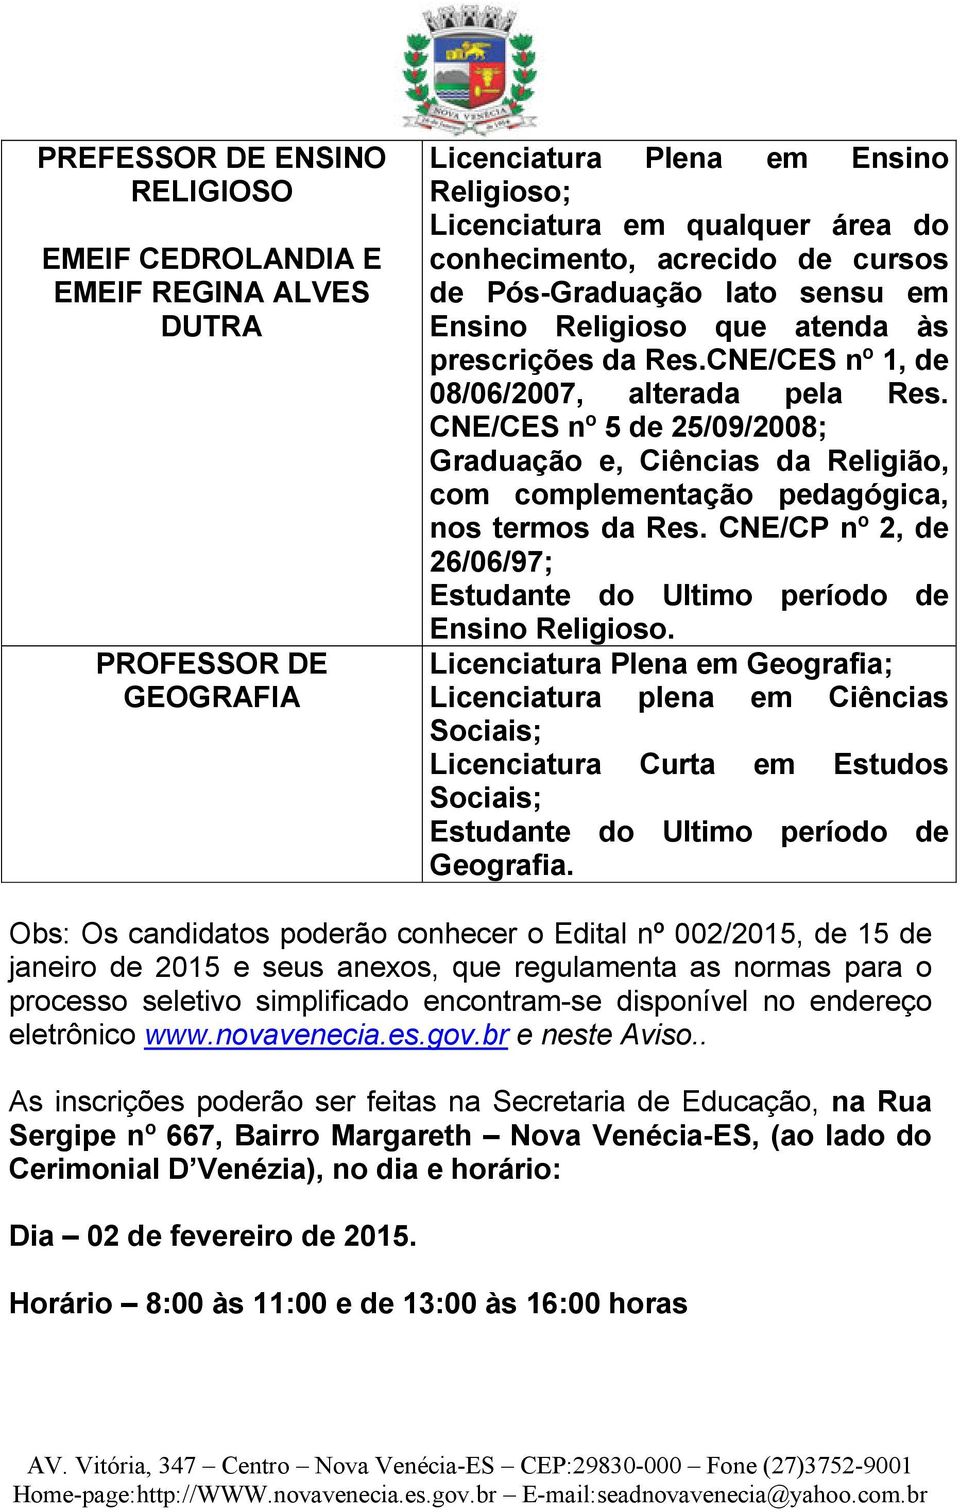 CNE/CES nº 5 de 25/09/2008; Graduação e, Ciências da Religião, com complementação pedagógica, nos termos da Res. CNE/CP nº 2, de 26/06/97; Ensino Religioso.